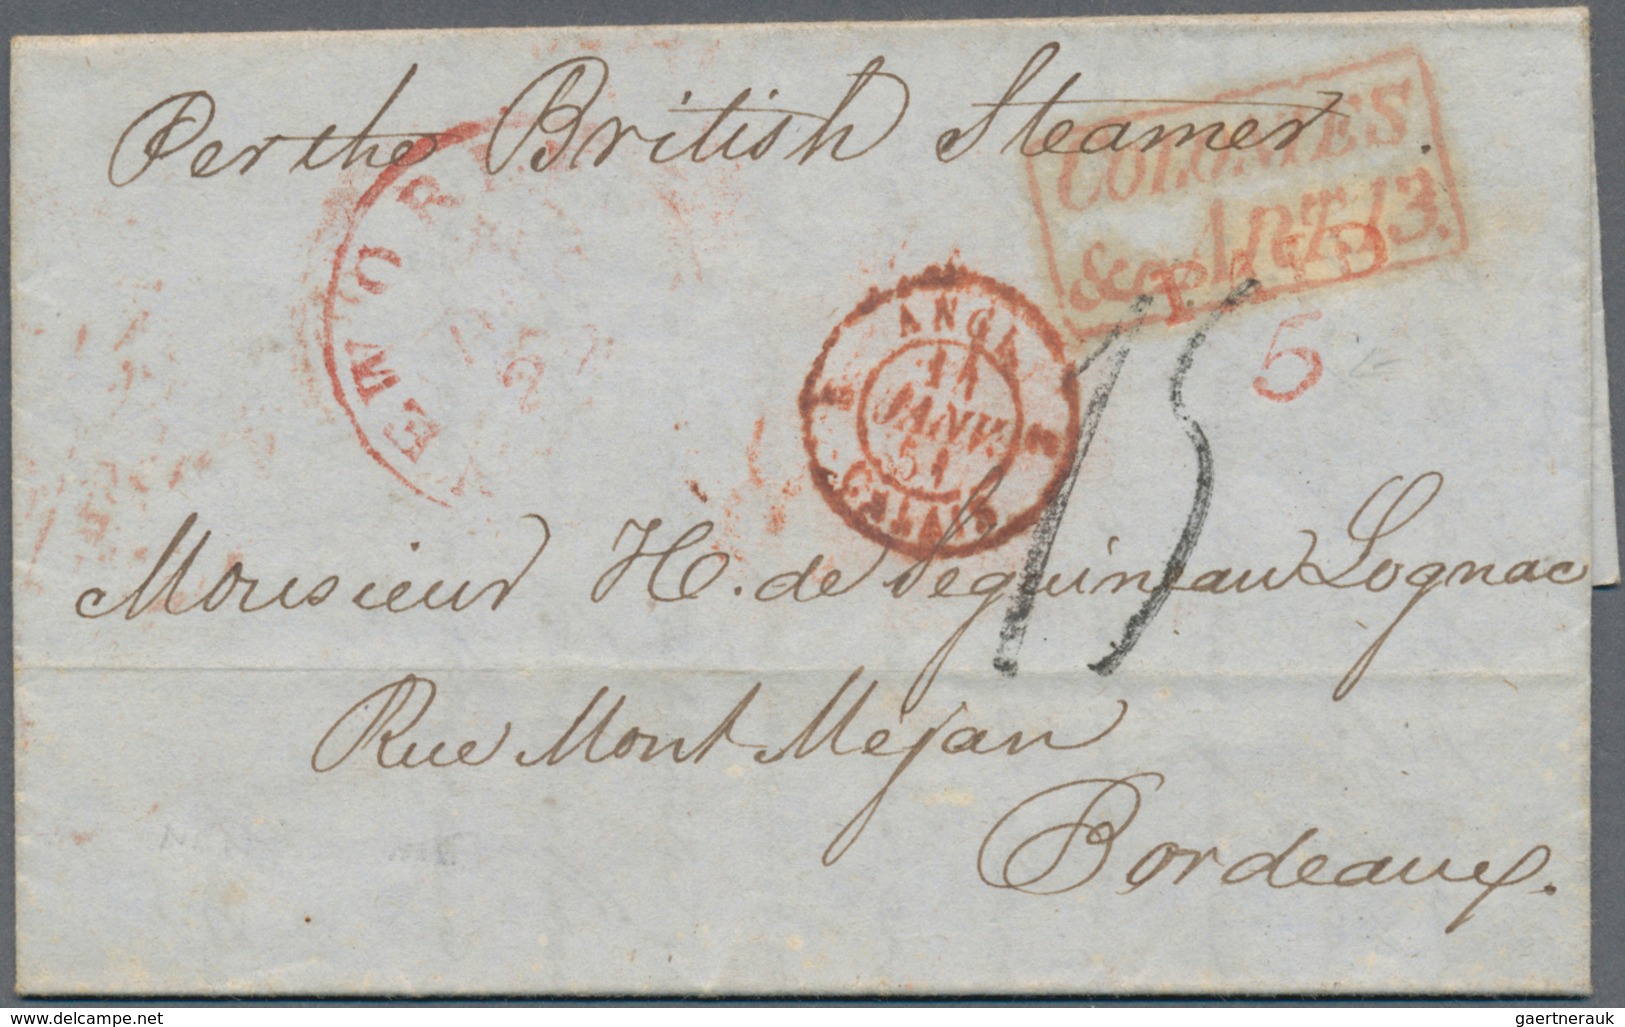 Frankreich - Vorphilatelie: 1720/1870 (ca.), enormous accumulation of apprx. 1.000 (roughly estimate